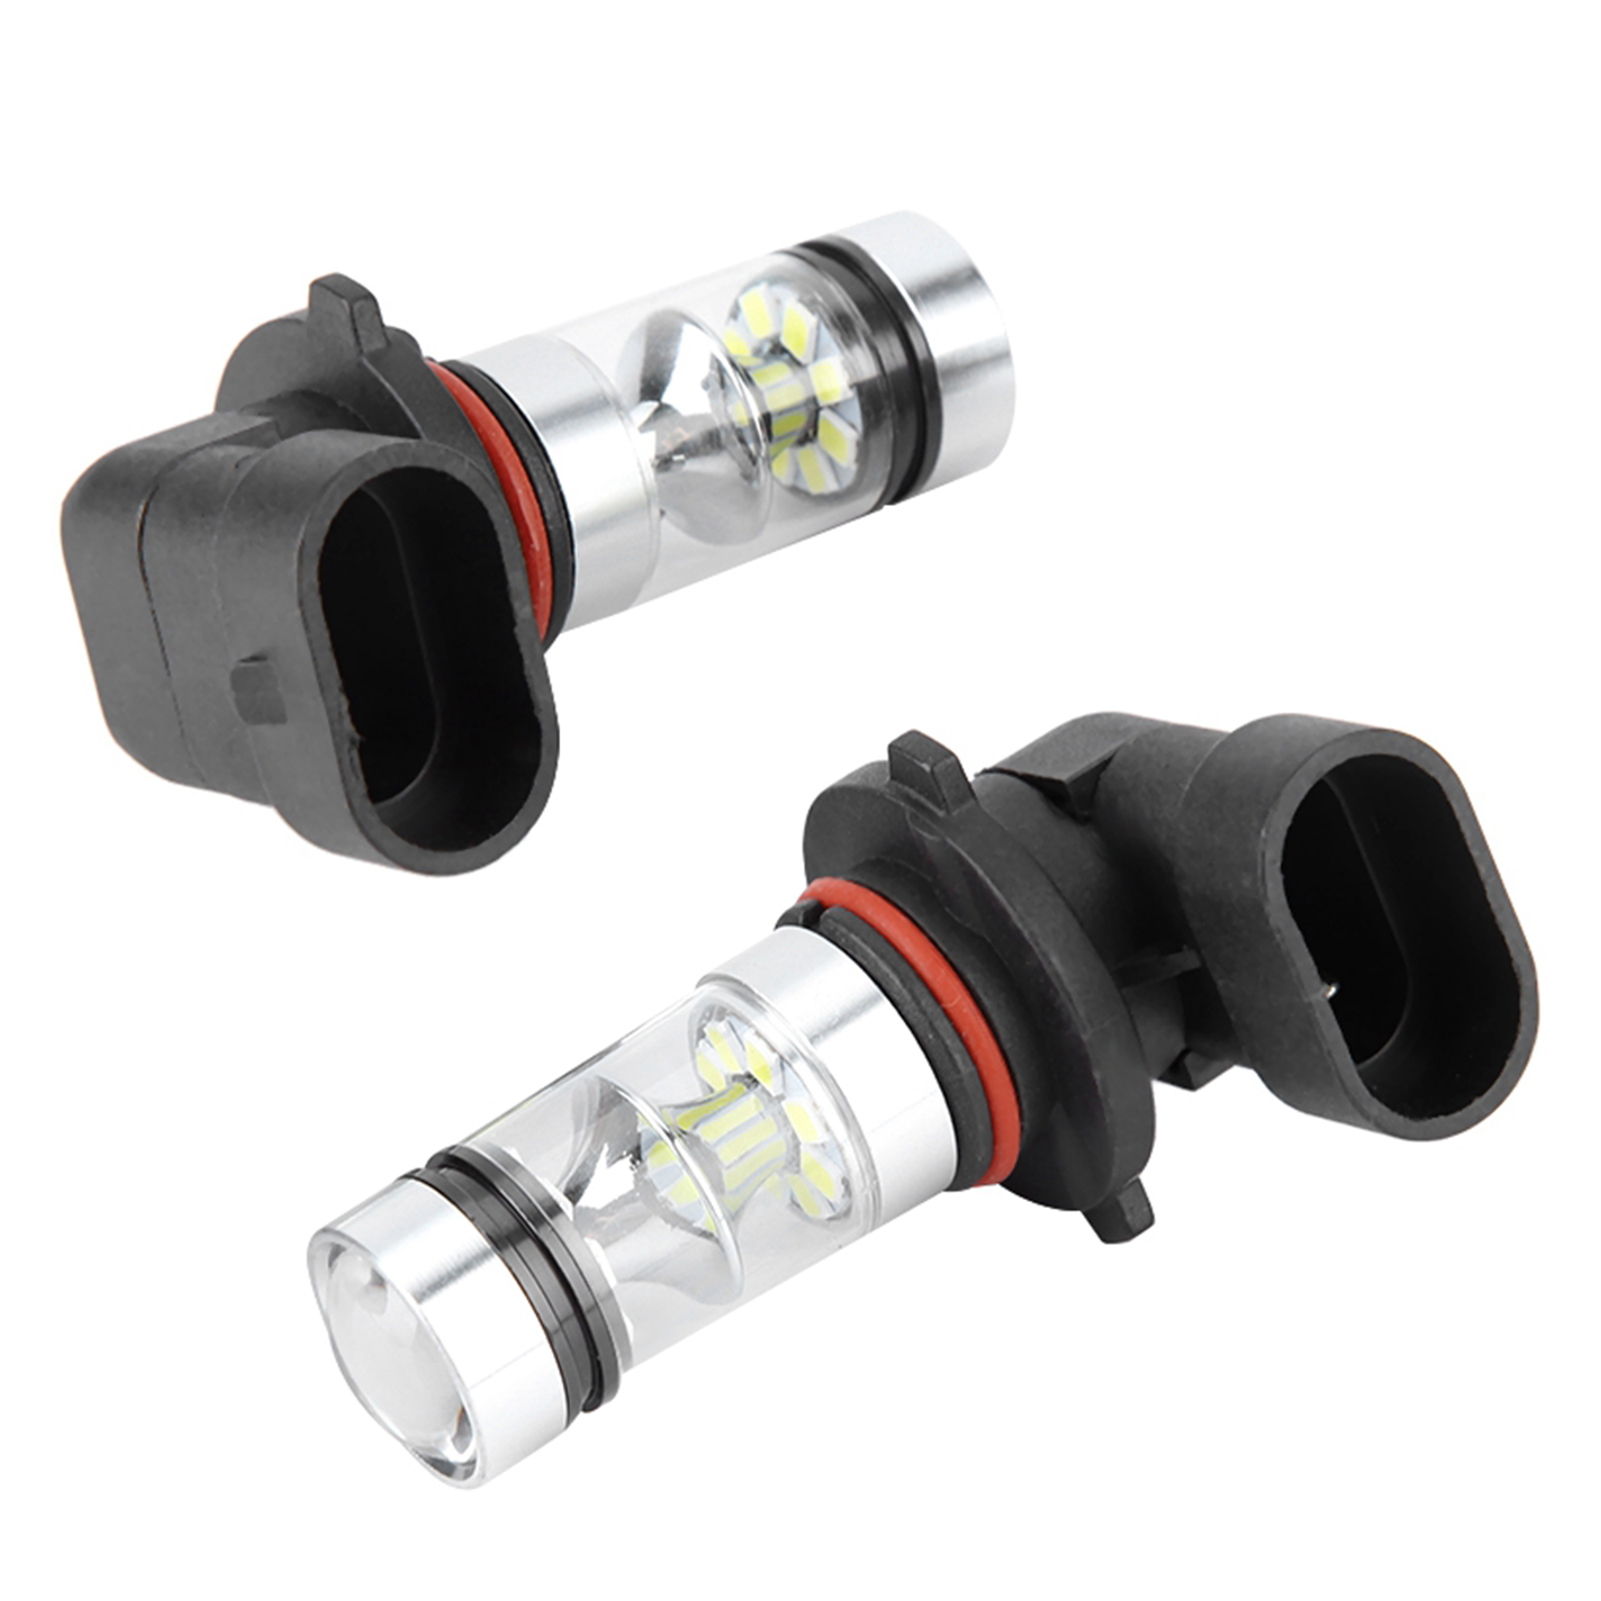 2 pièces 9006 / HB4 100W blanc LED haute luminosité phare ampoules Kit antibrouillard voiture conduite lampe-8991082669624